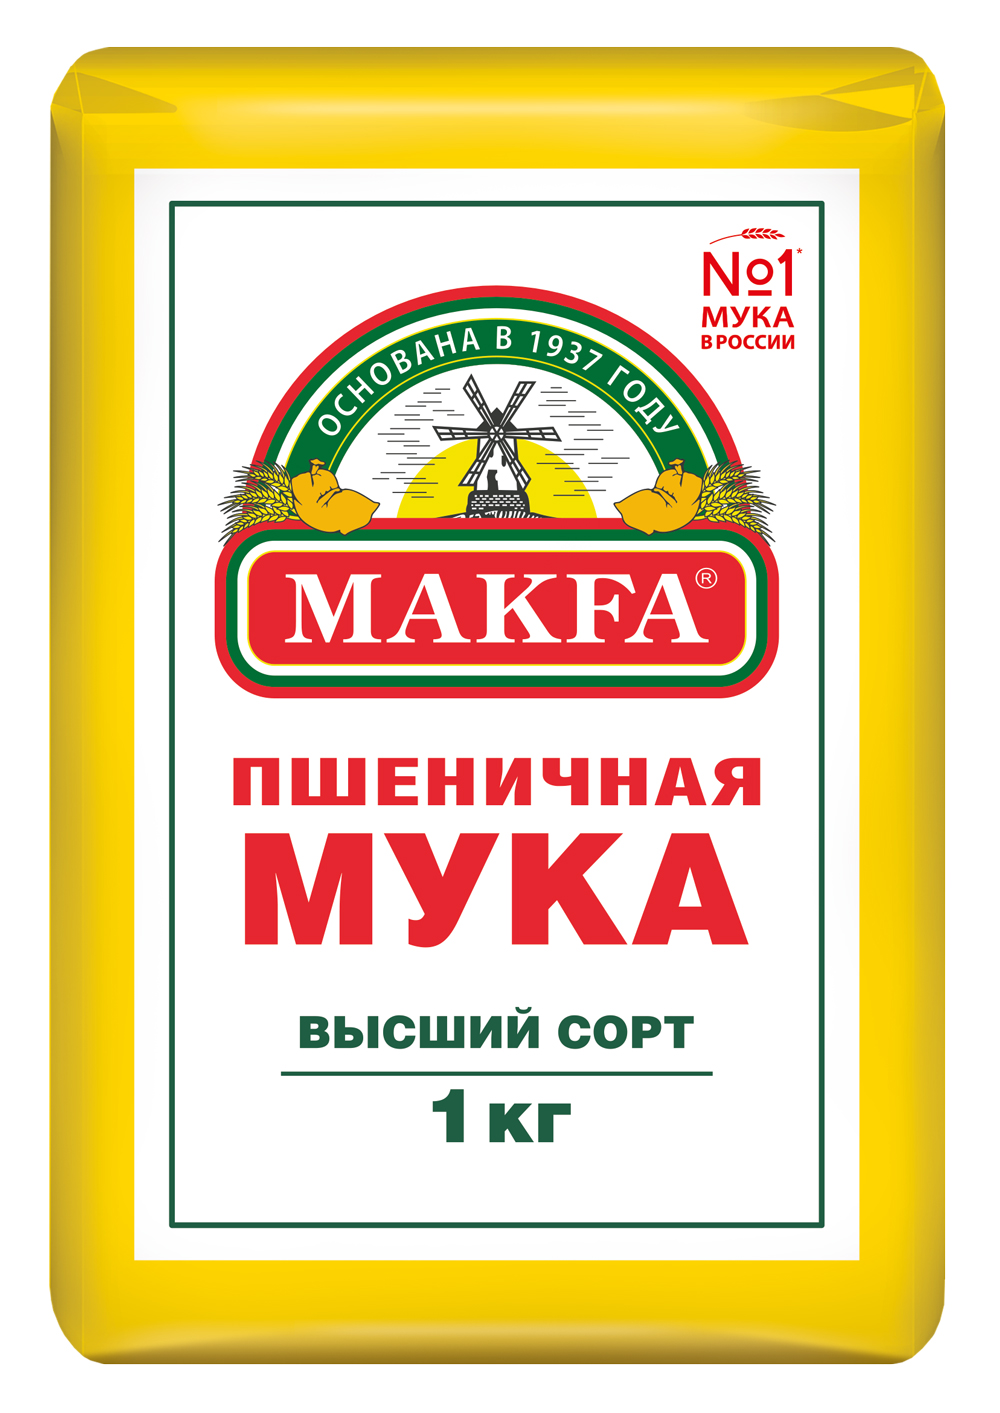 Мука Makfa пшеничная хлебопекарная высший сорт 1 кг – купить в Москве, цены в интернет-магазинах на Мегамаркет